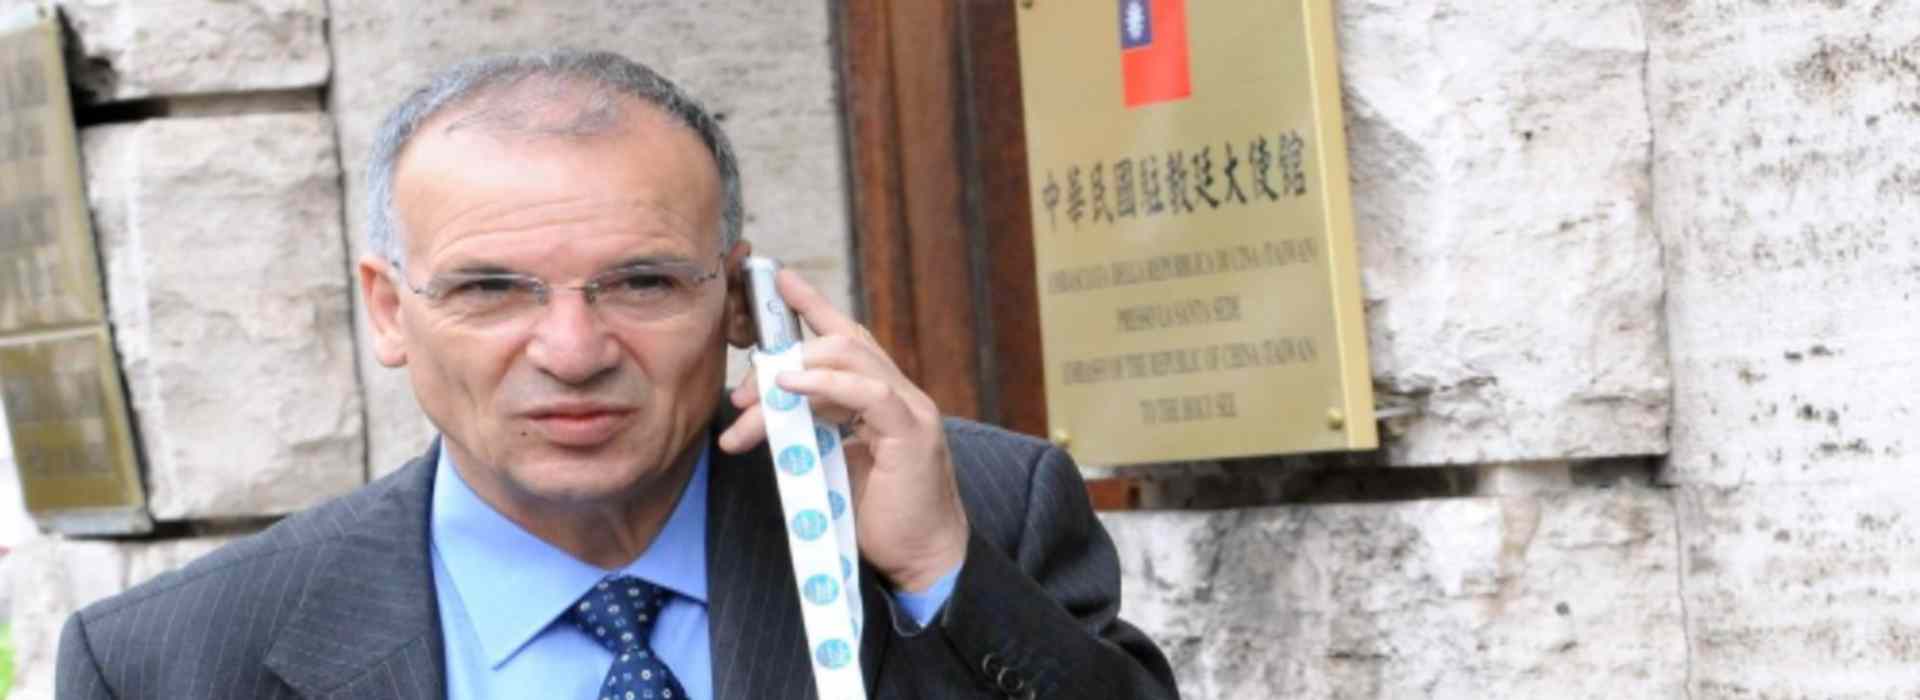 'Ndrangheta, operazione "Farmabusiness": arrestato il presidente del consiglio regionale della Calabria